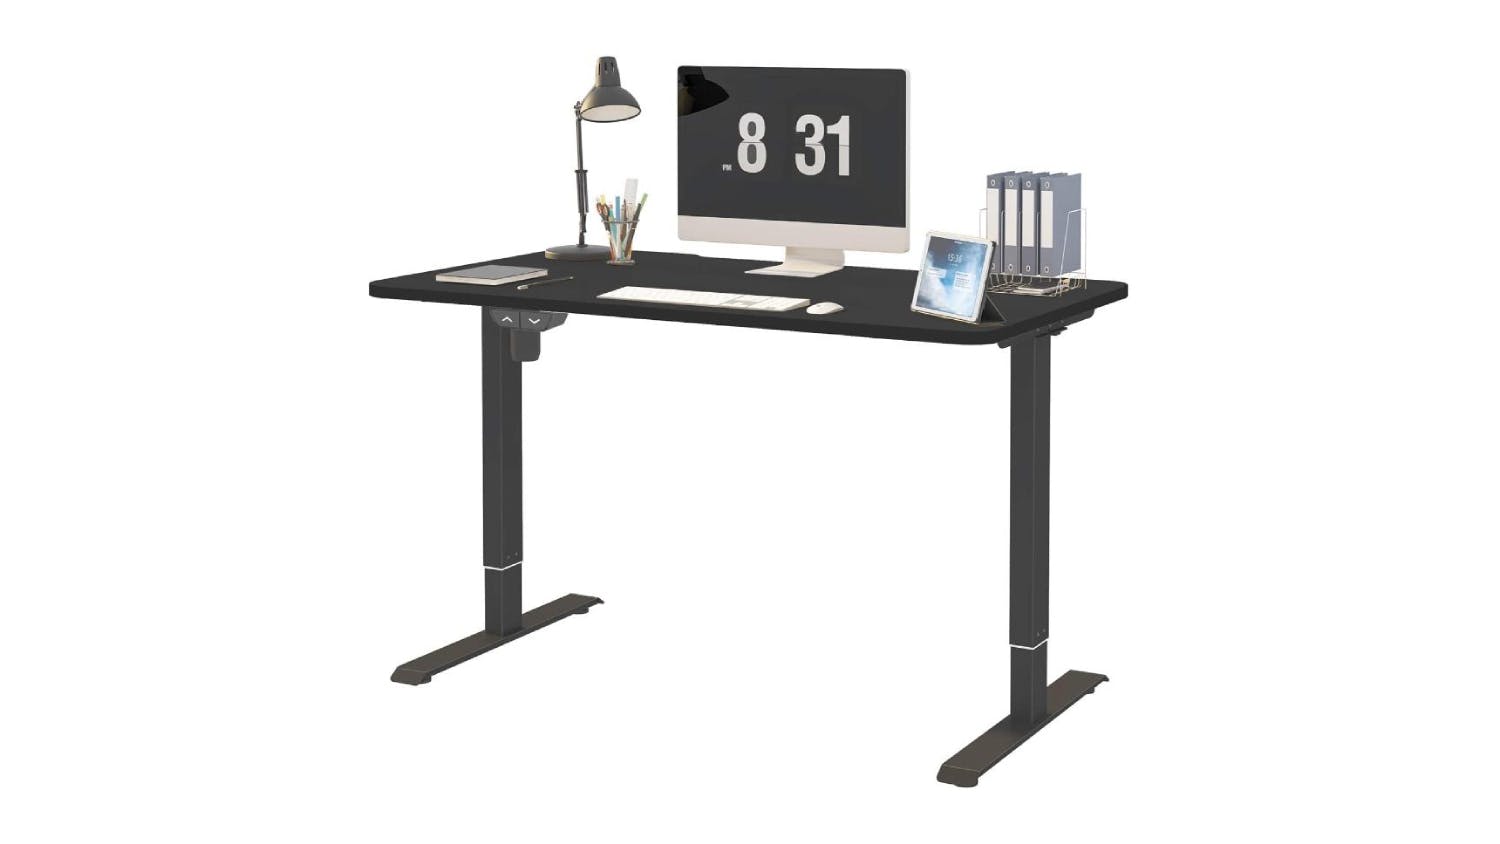 Kmall Motorised Standing Desk 120cm - Black